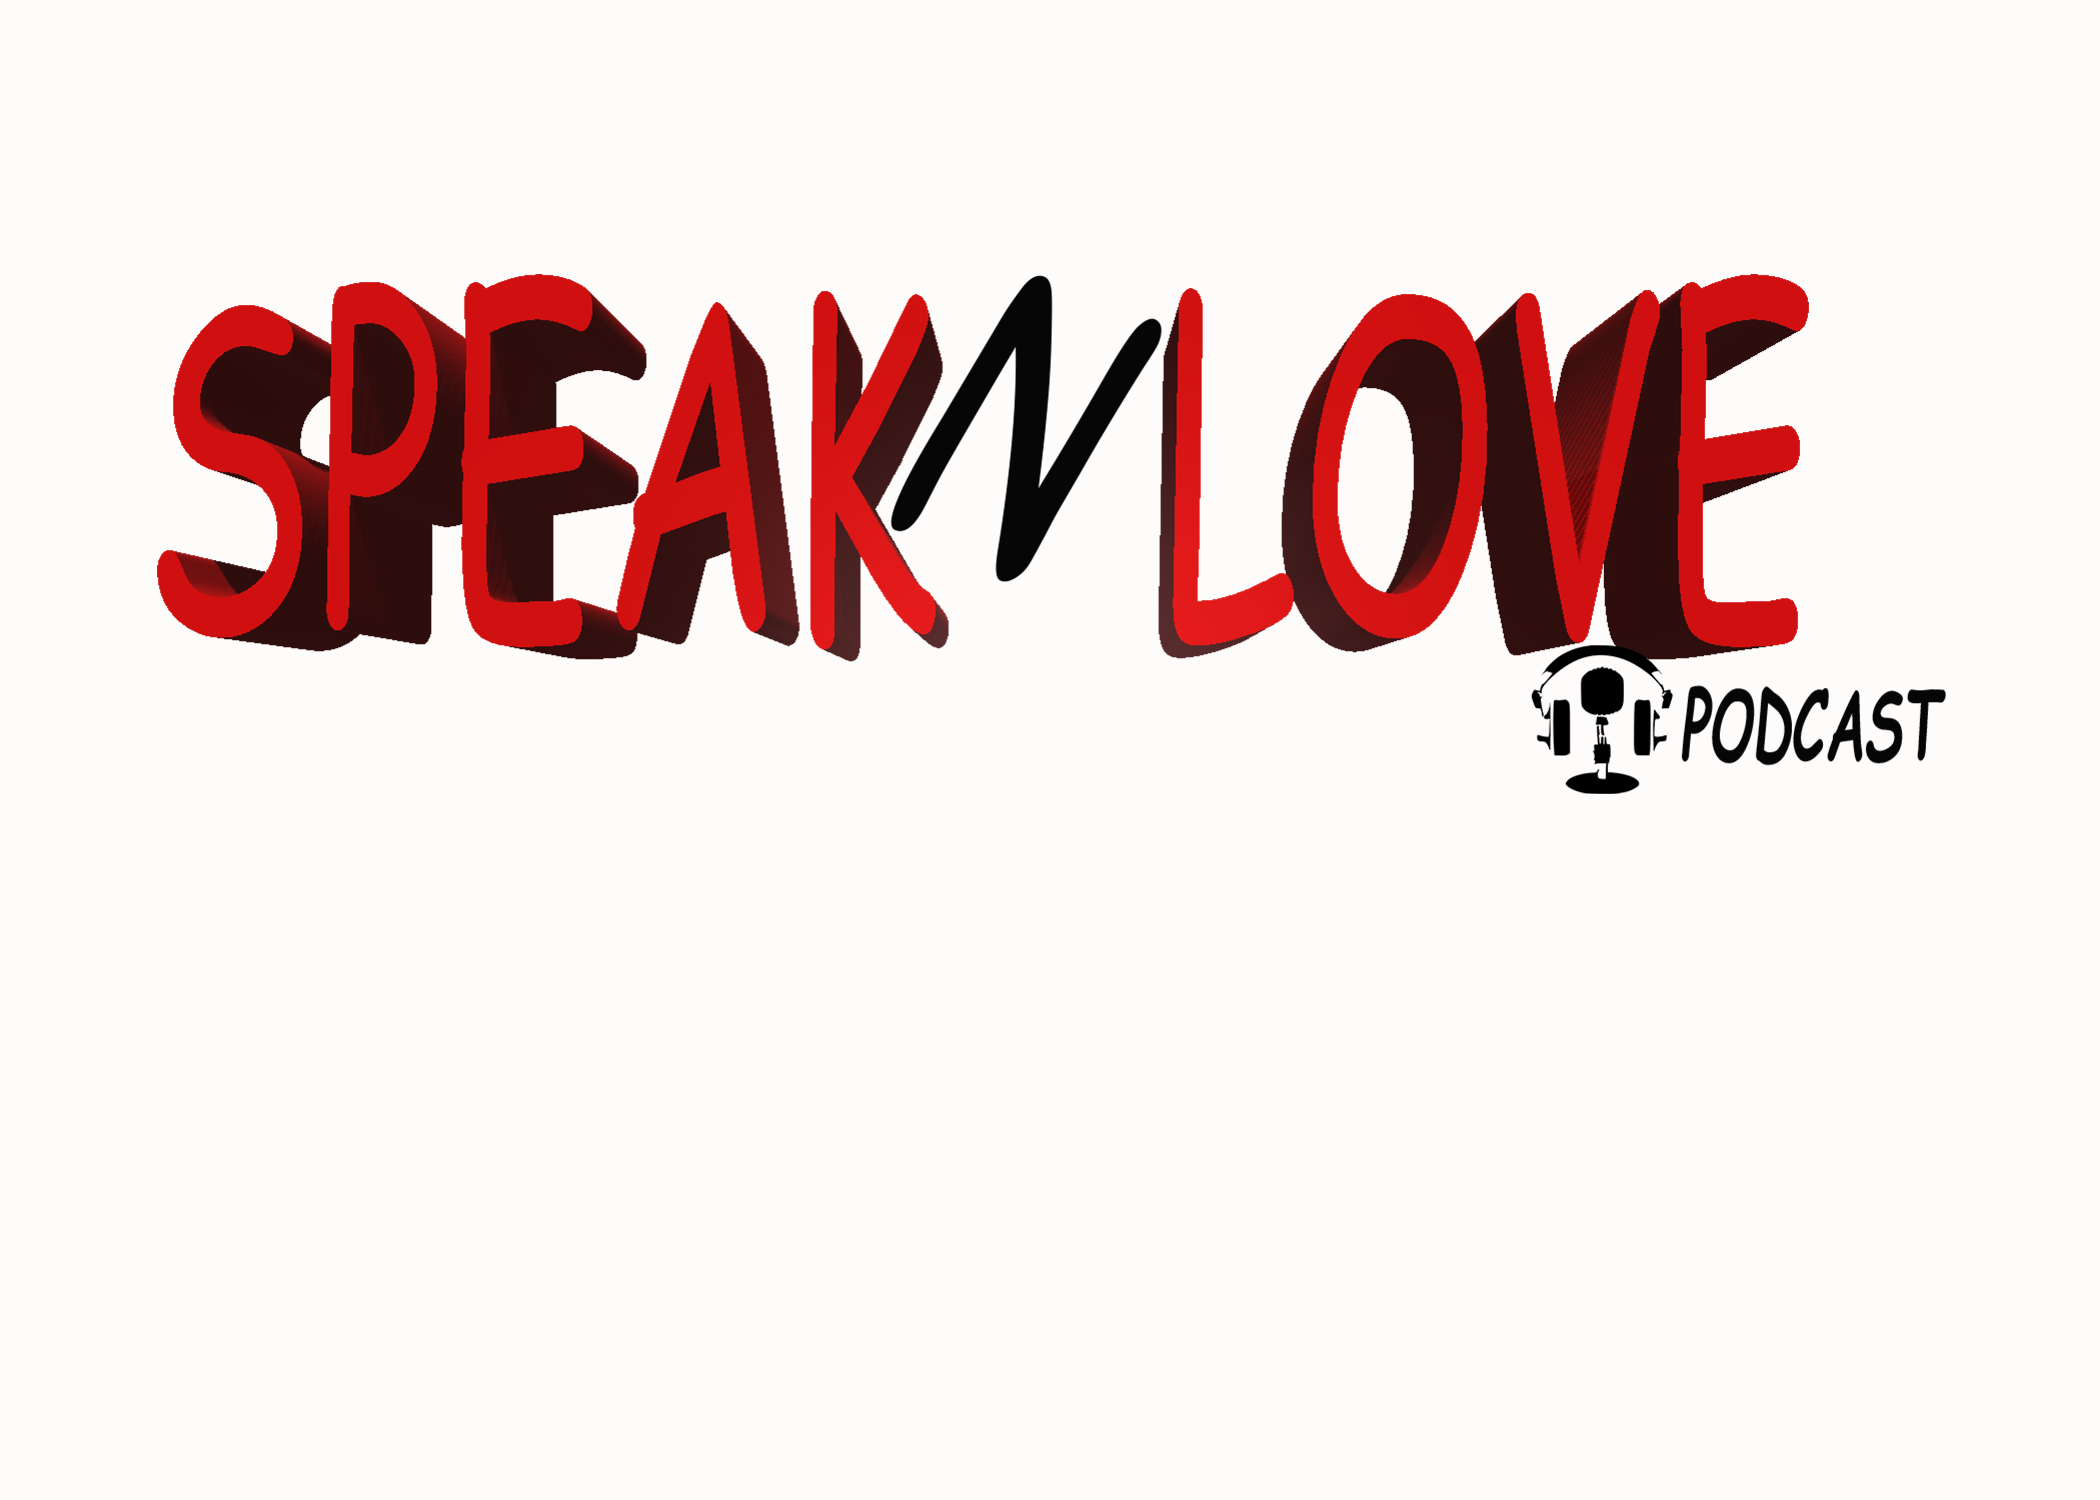 SpeaknLove